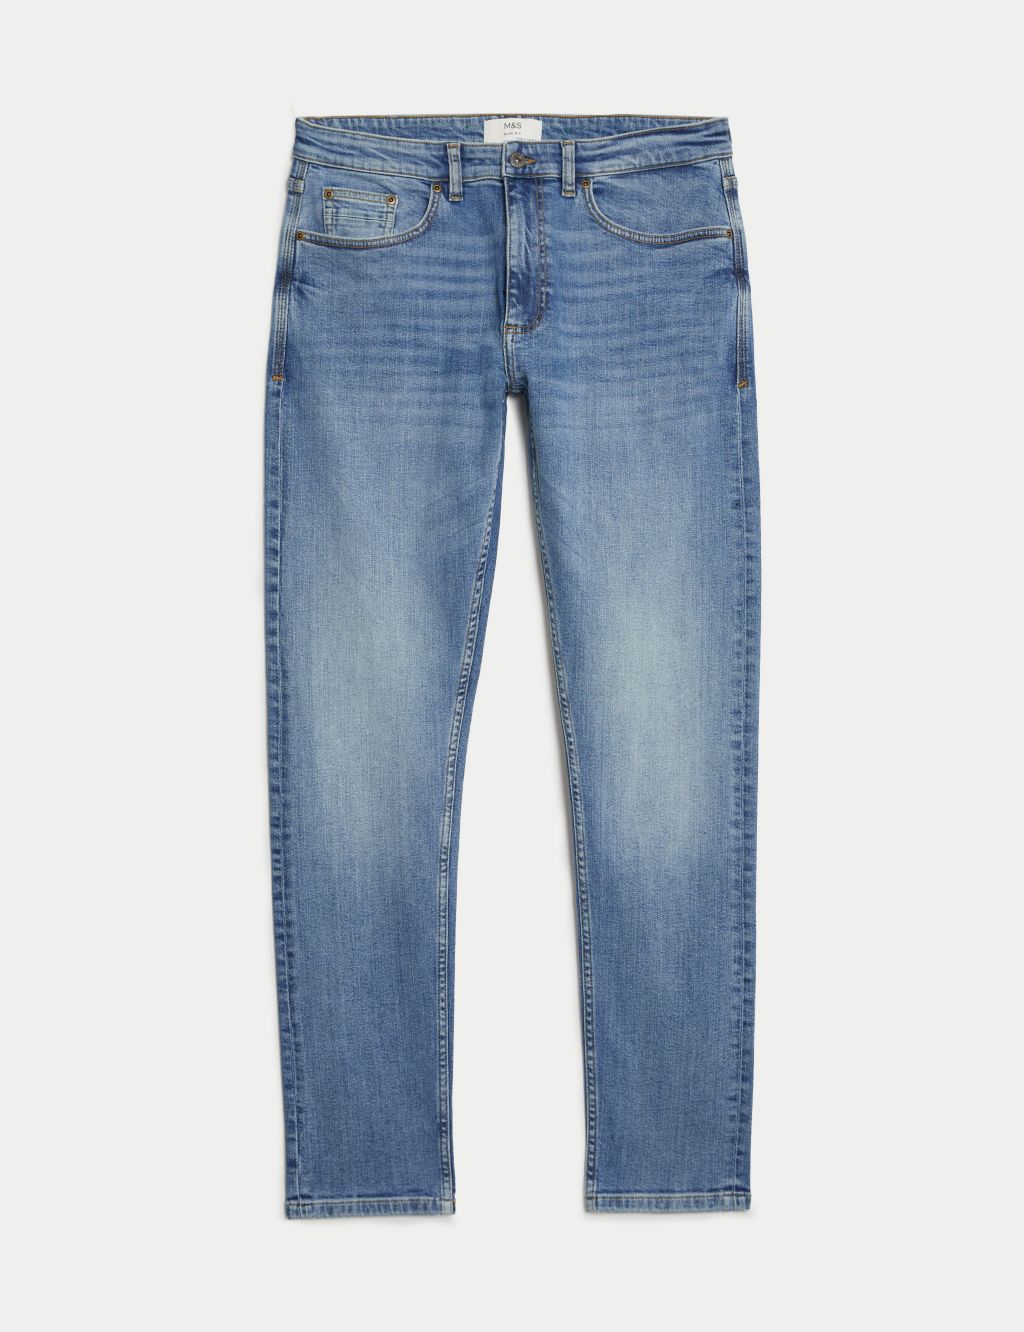 Slim Fit Vintage Wash Stretch Jeans